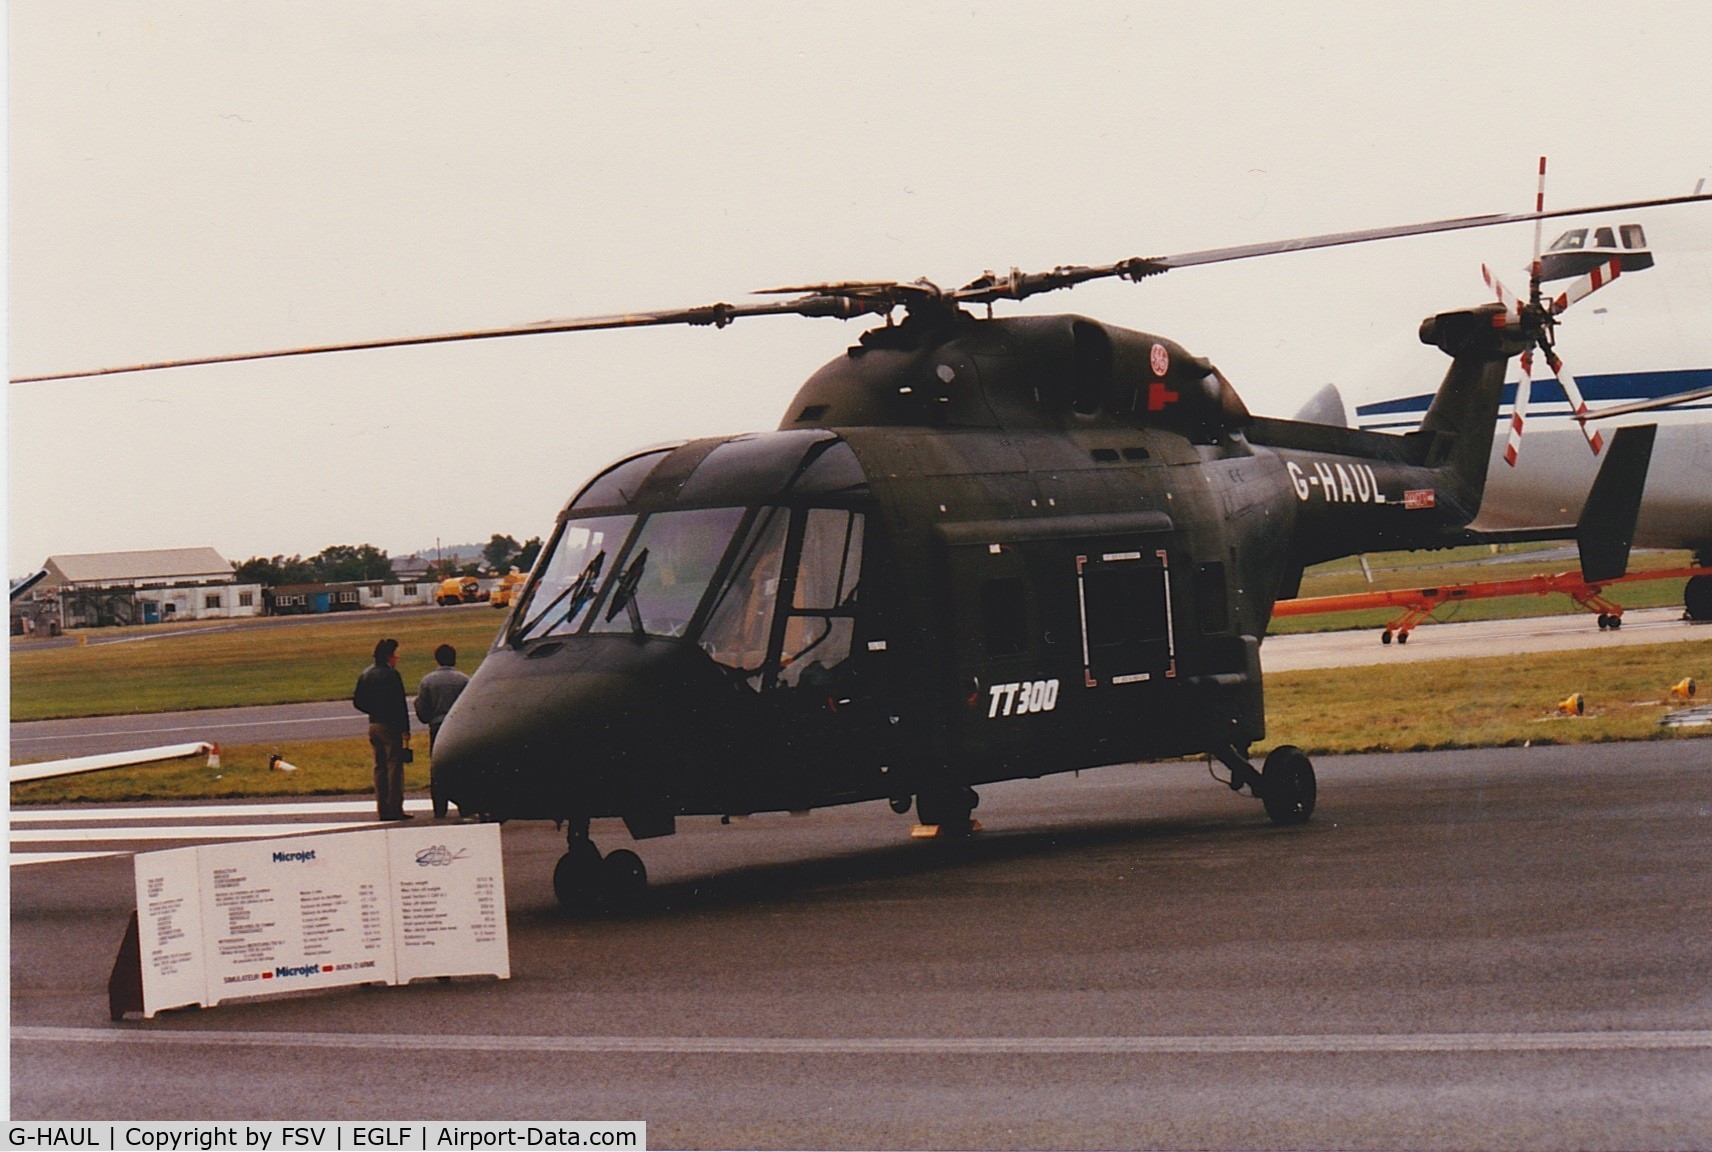 G-HAUL, 1986 Westland WG-30-300 C/N 020, G-Haul seen at Farnborough in 1986